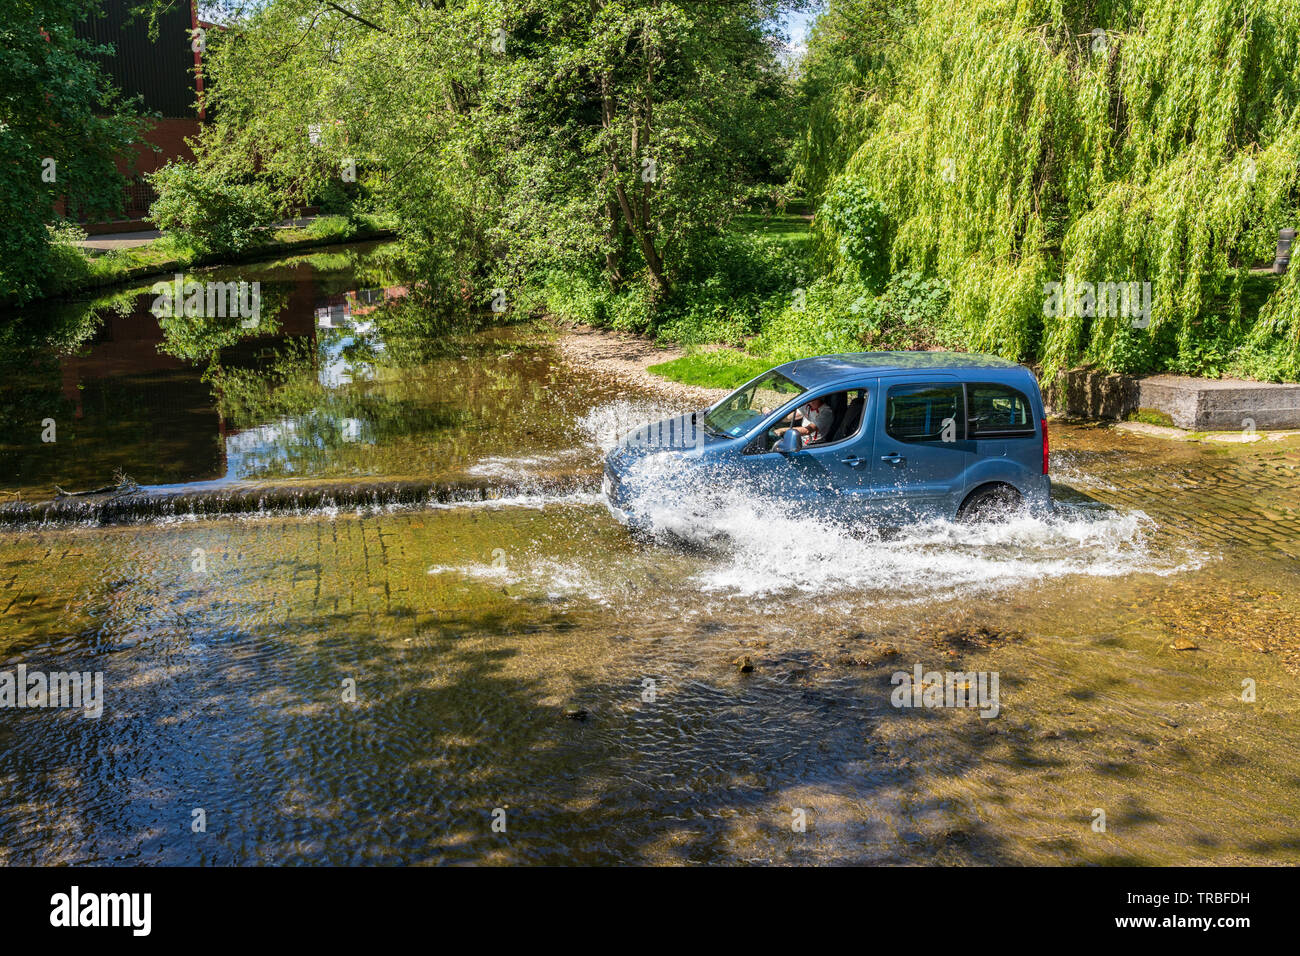 Les éclaboussures d'eau sont visibles le long de la rivière tandis que le petit véhicule bleu traverse une Ford peu profonde, Ripon, North Yorkshire, Angleterre, Royaume-Uni. Banque D'Images